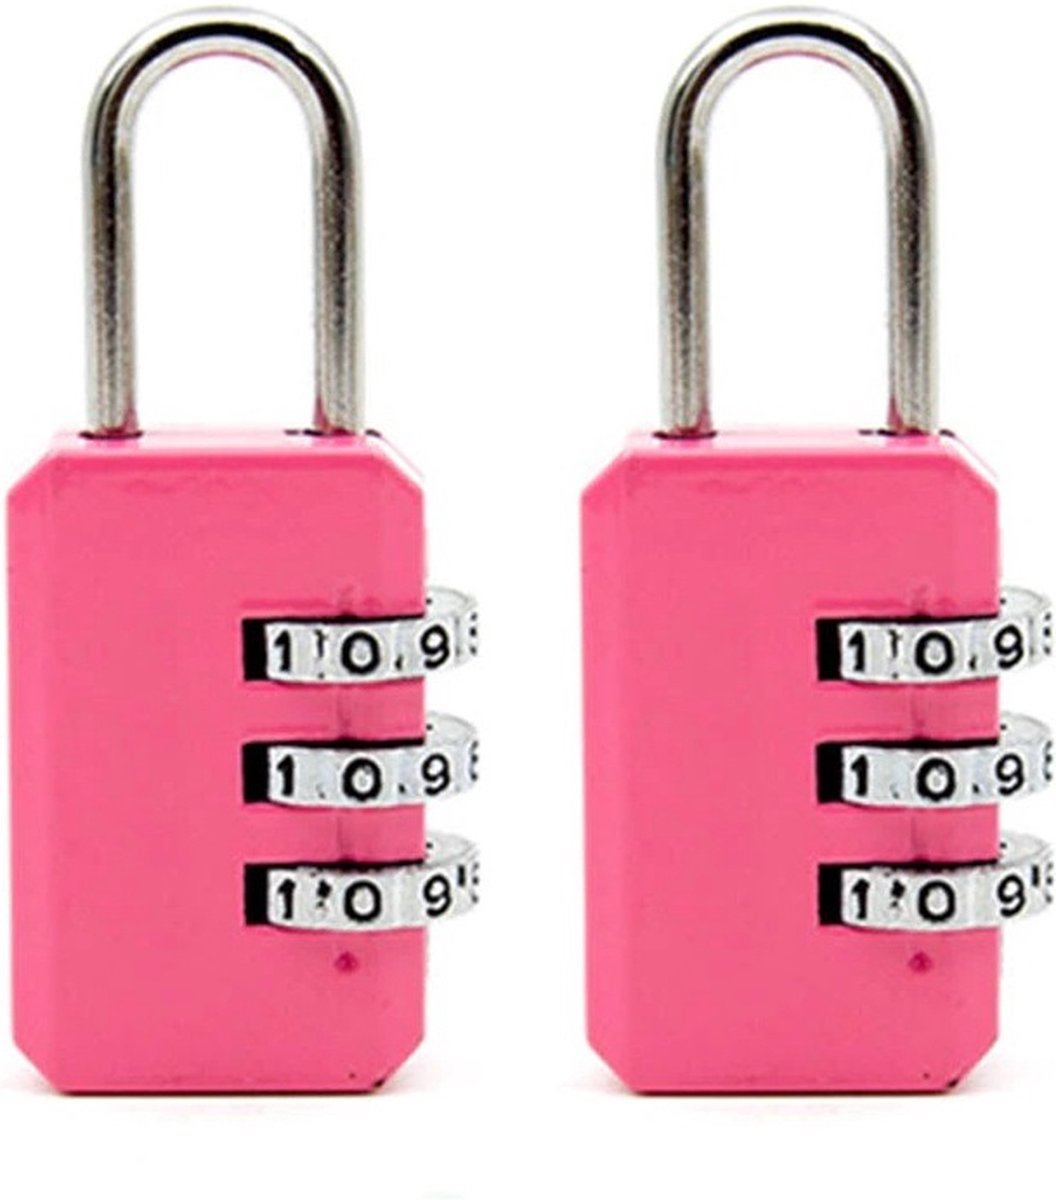 2 stuks Cijferslotjes – Mini Hangslotjes – 3-cijferig Slot – Geschikt voor kluisje, sport, koffer – Roze